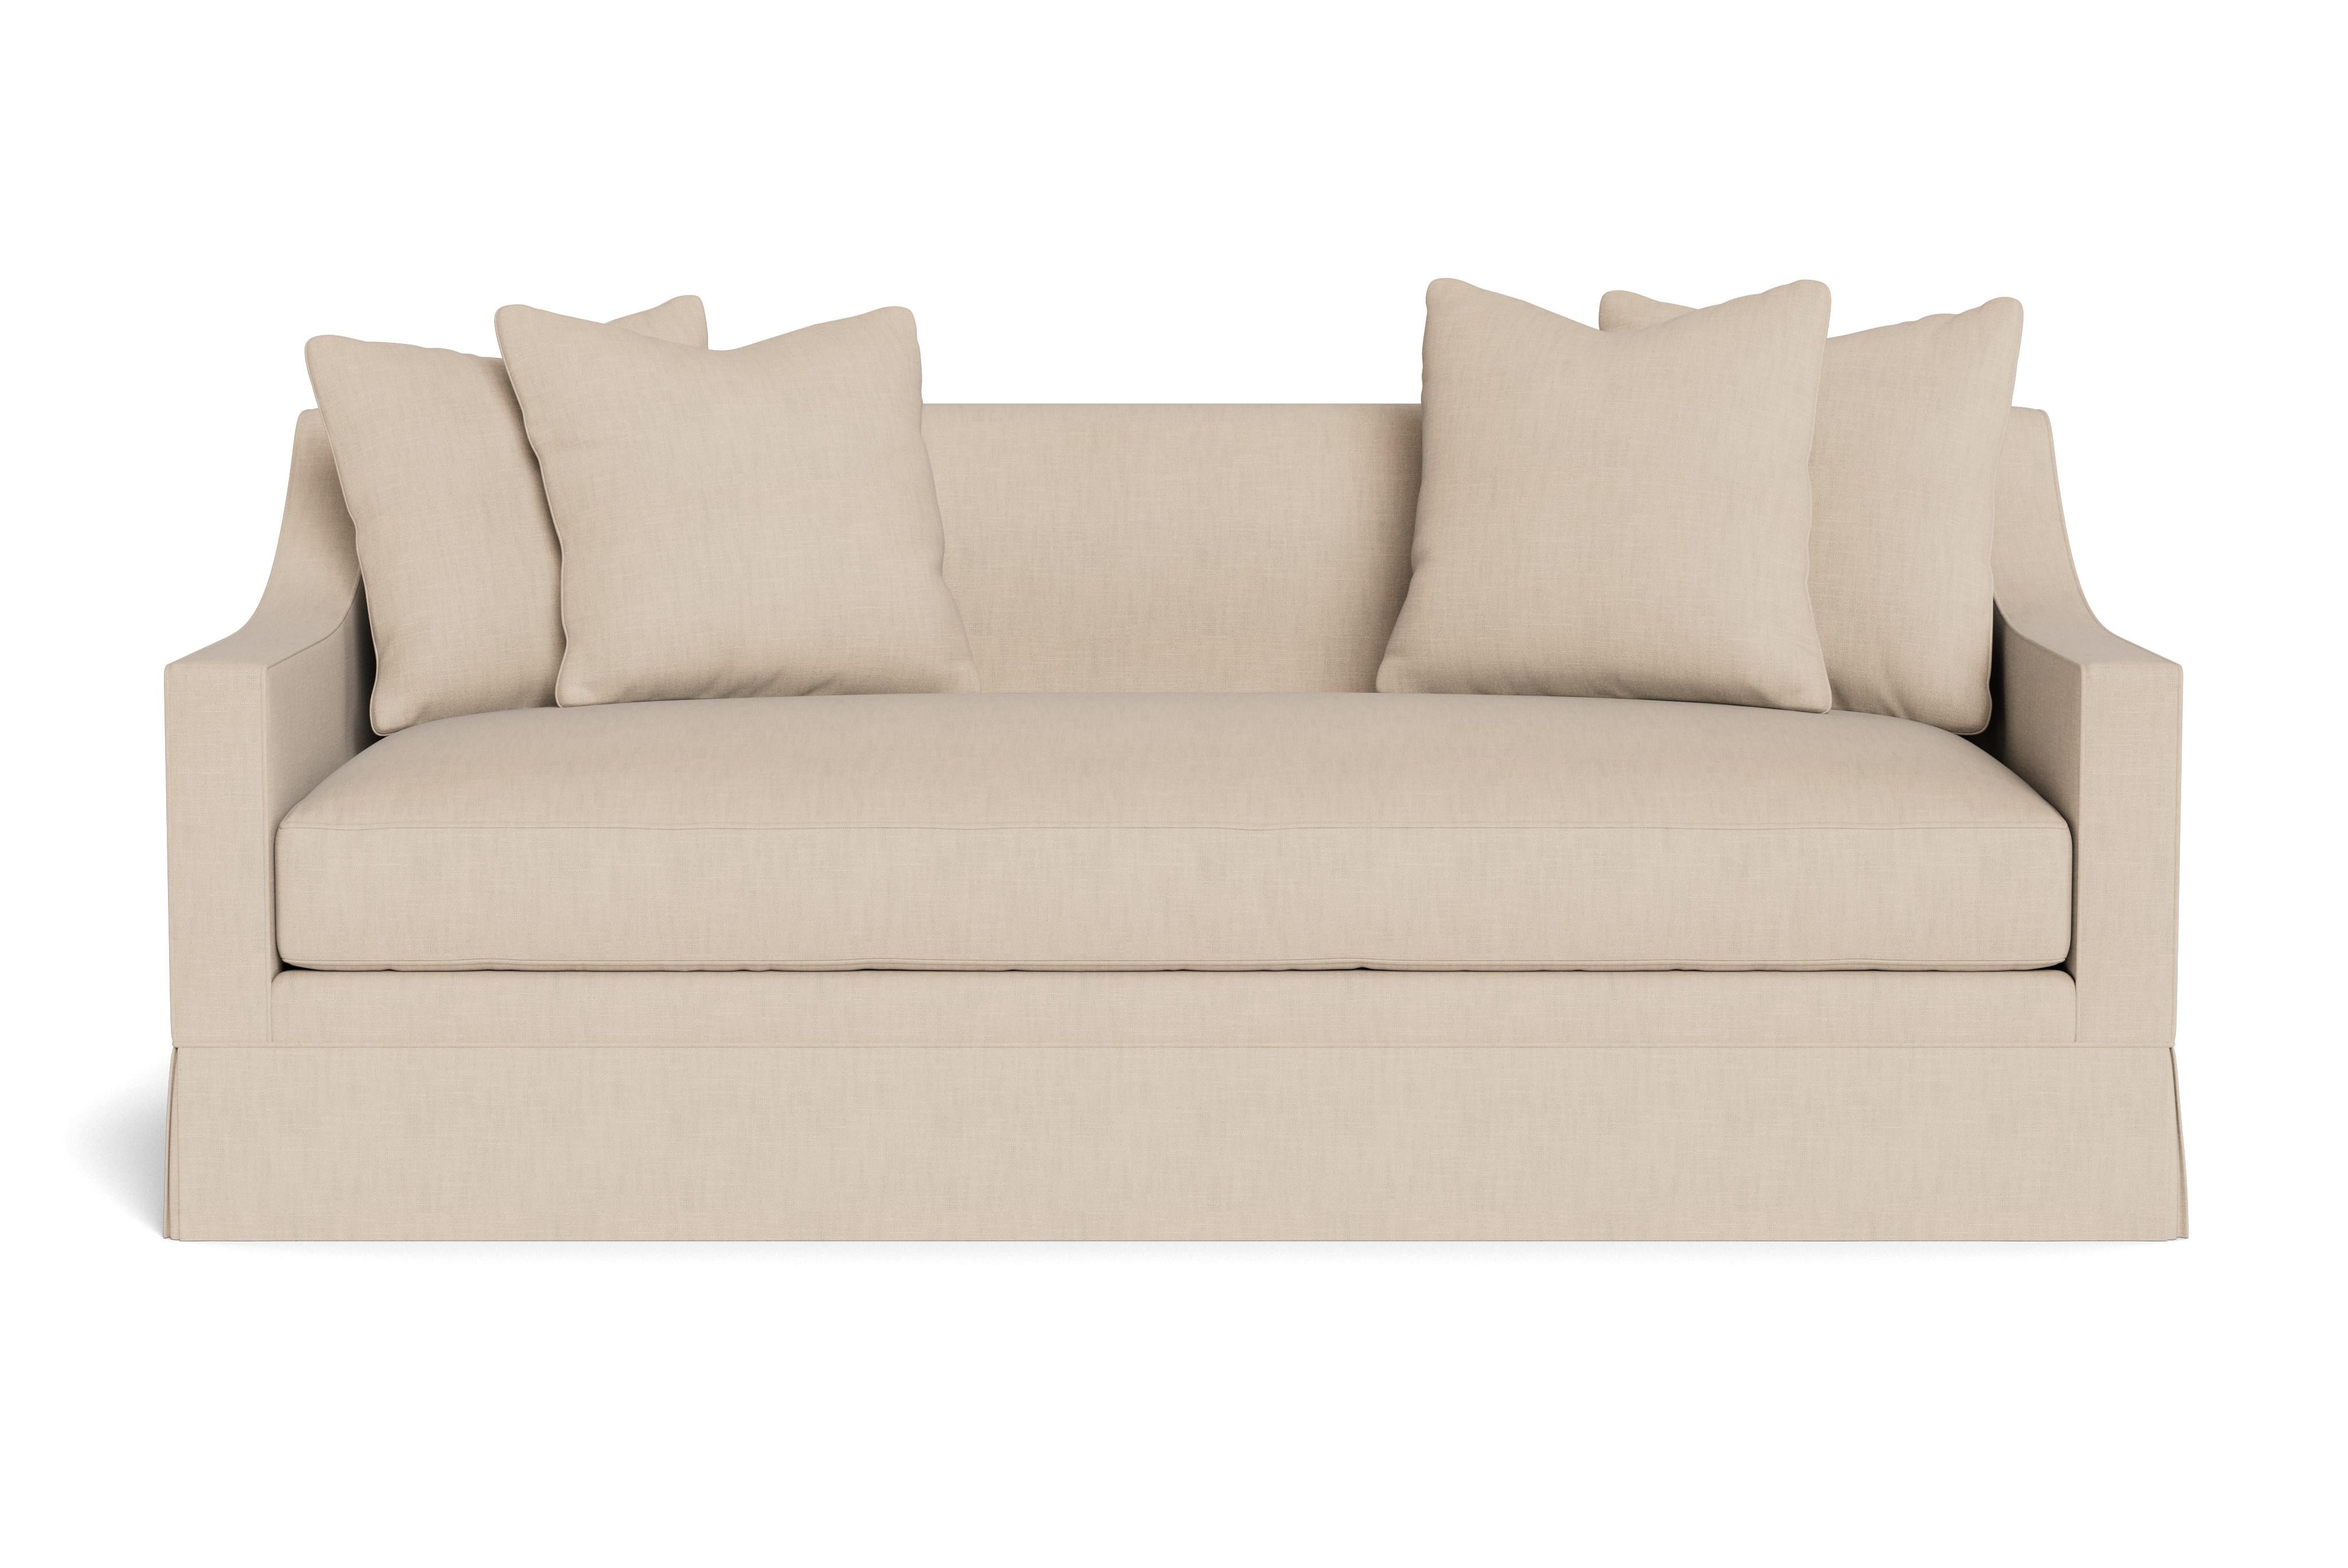 Ein hübsches, modernes Sofa mit abgeschrägten Armlehnen. Elegantes Schnittmuster, ergänzt durch ein einzelnes Sitzkissen und vier lose Kissen (21